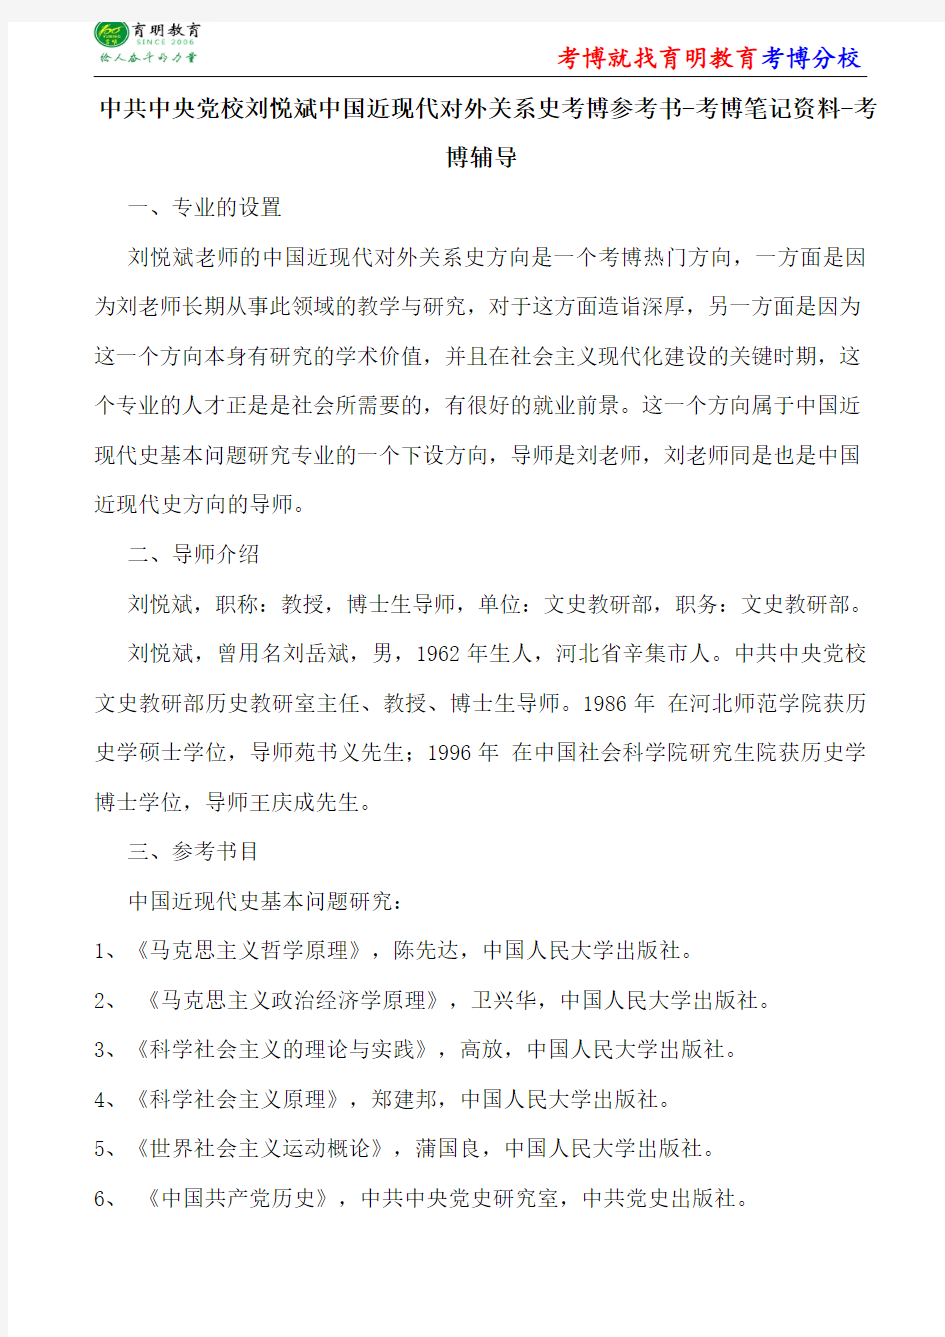 中共中央党校刘悦斌中国近现代关系史考博参考书-考博笔记资料-考博辅导